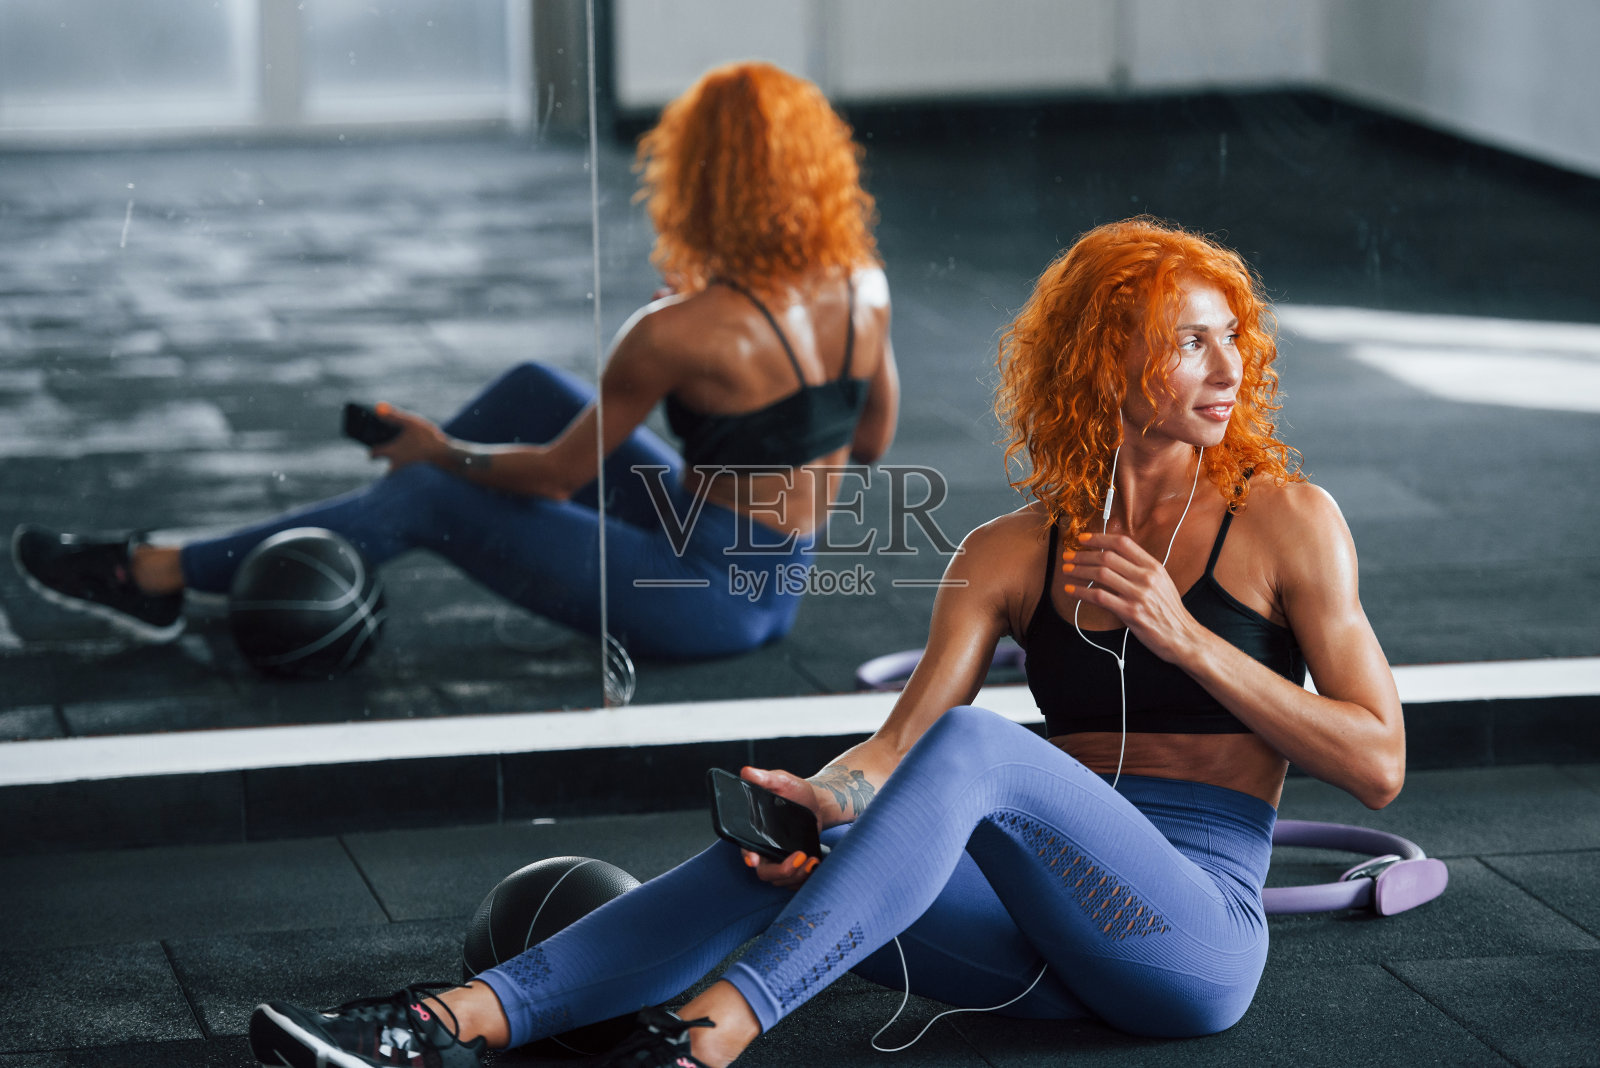 戴着耳机听音乐。喜欢运动的红发女孩白天去健身房健身。肌肉发达的身体类型照片摄影图片